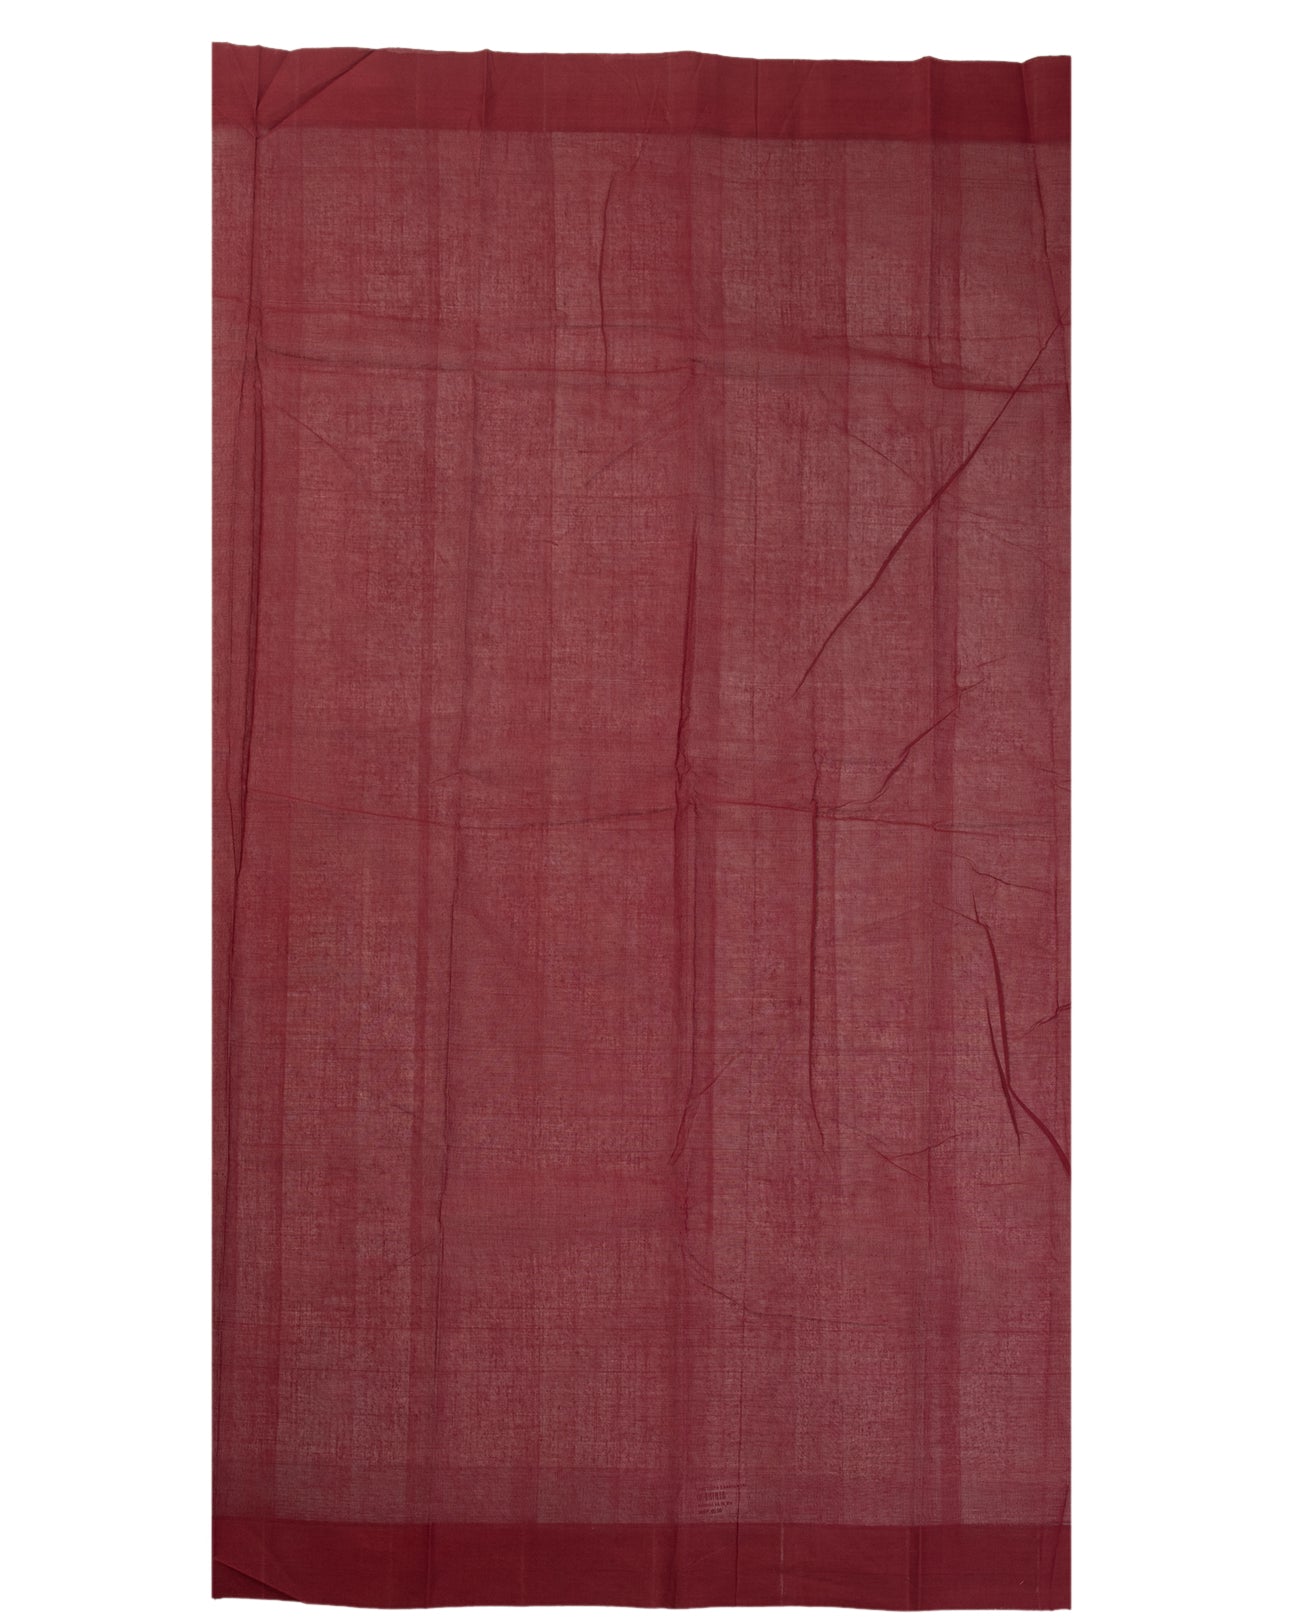 Turmeric Yellow Cotton Saree - swayamvara silks